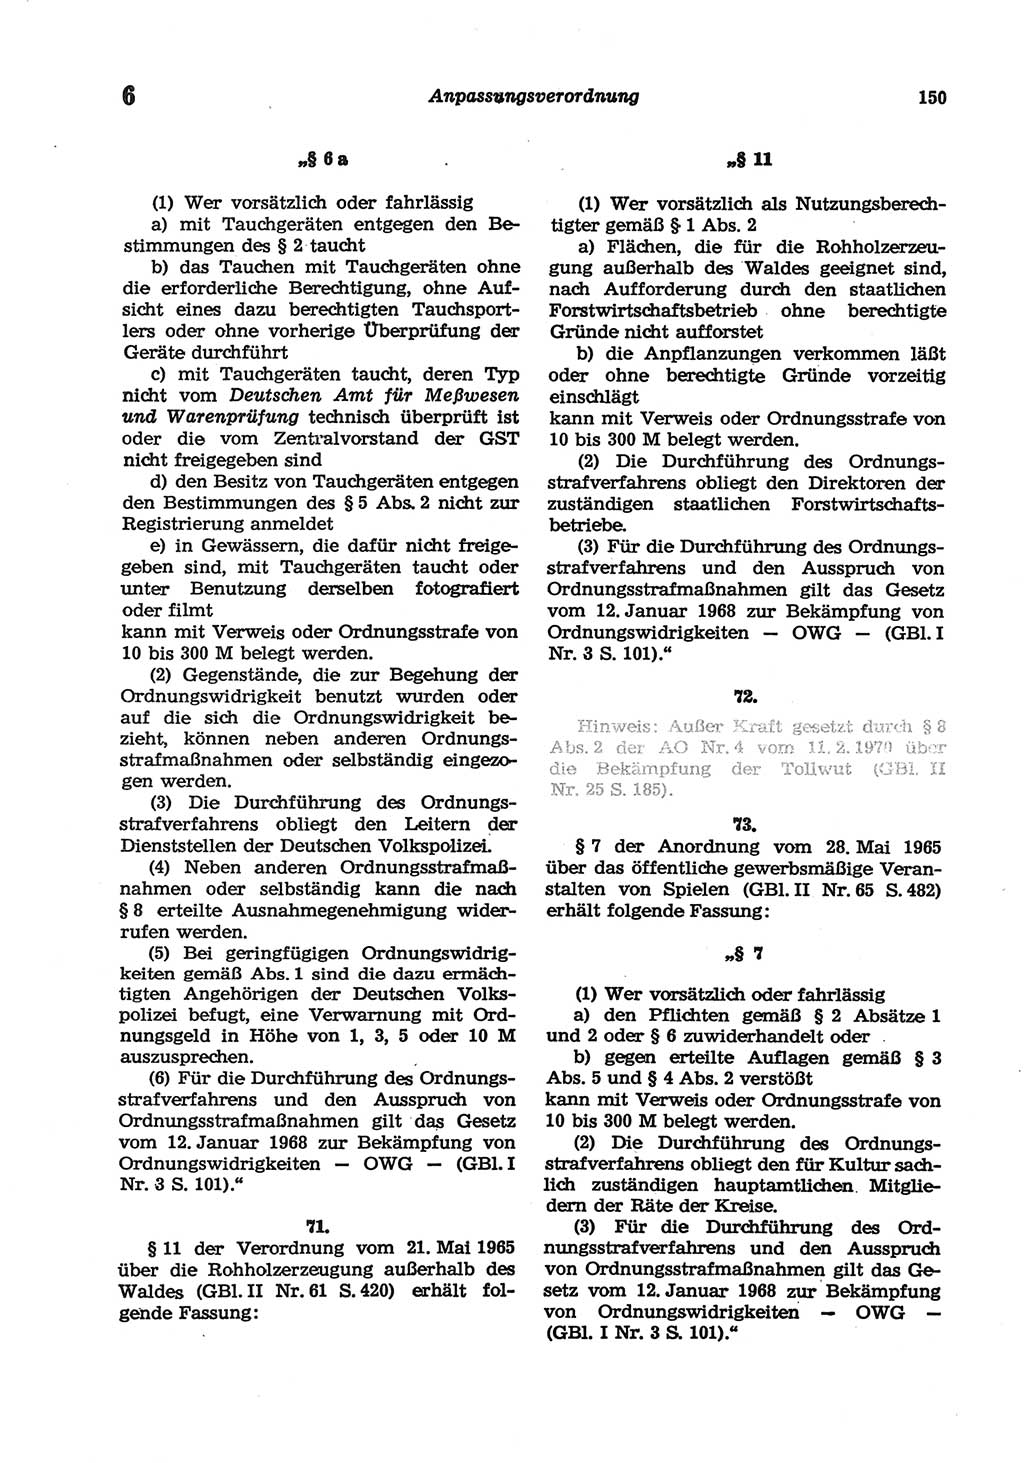 Strafgesetzbuch (StGB) der Deutschen Demokratischen Republik (DDR) und angrenzende Gesetze und Bestimmungen 1977, Seite 150 (StGB DDR Ges. Best. 1977, S. 150)